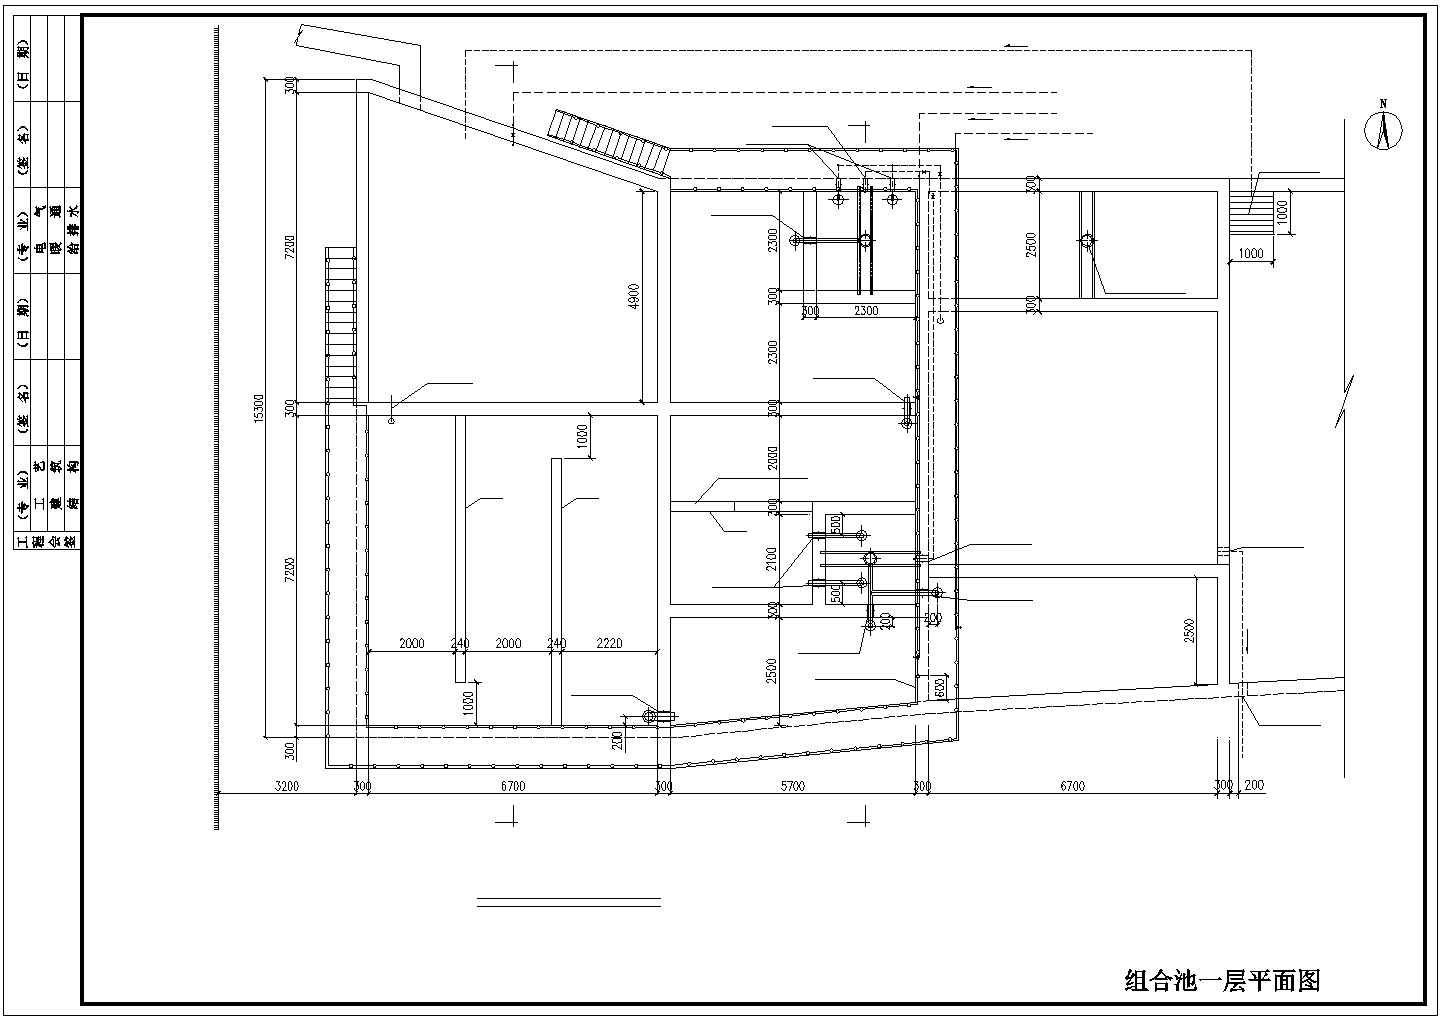 【上海】某公司污水改造项目工艺图